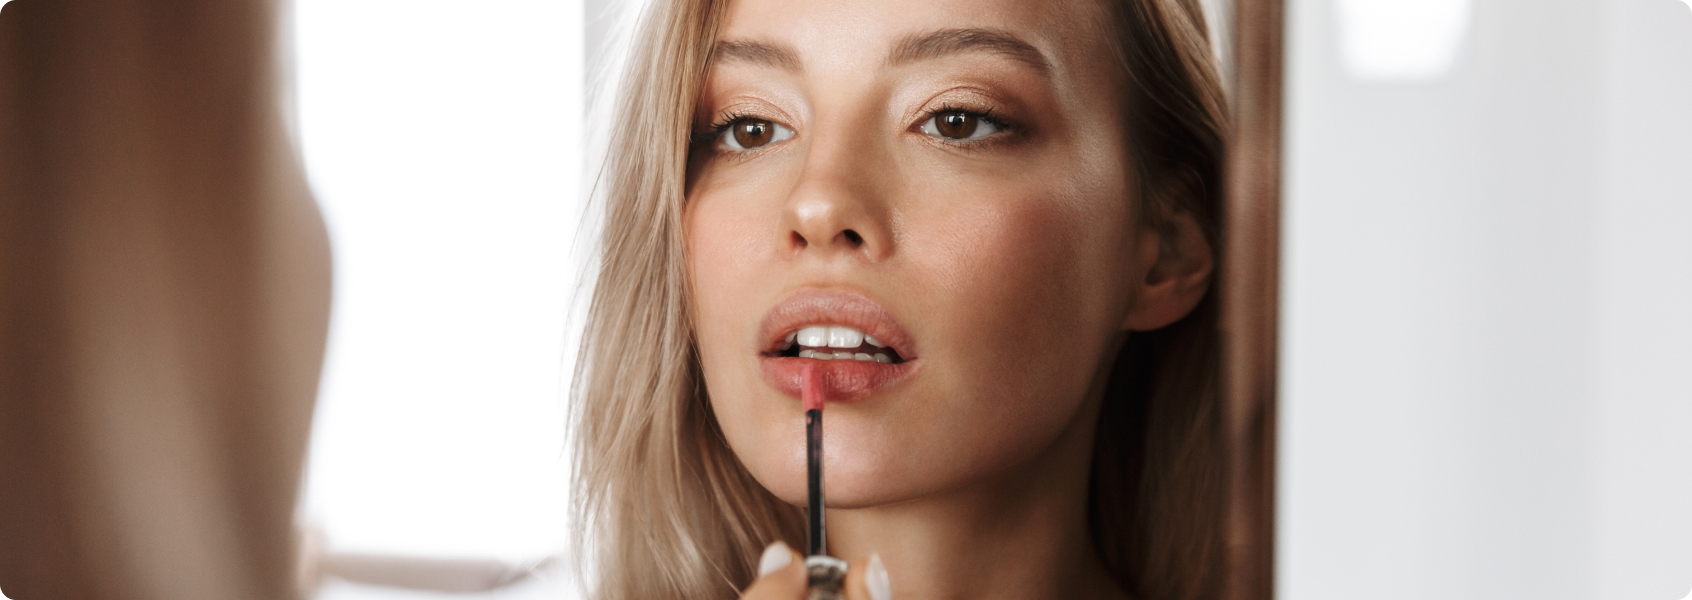 Lippen aufspritzen (Lippenvergrößerung) - Wie lange hält das Ergebnis einer Lippenvergrößerung?